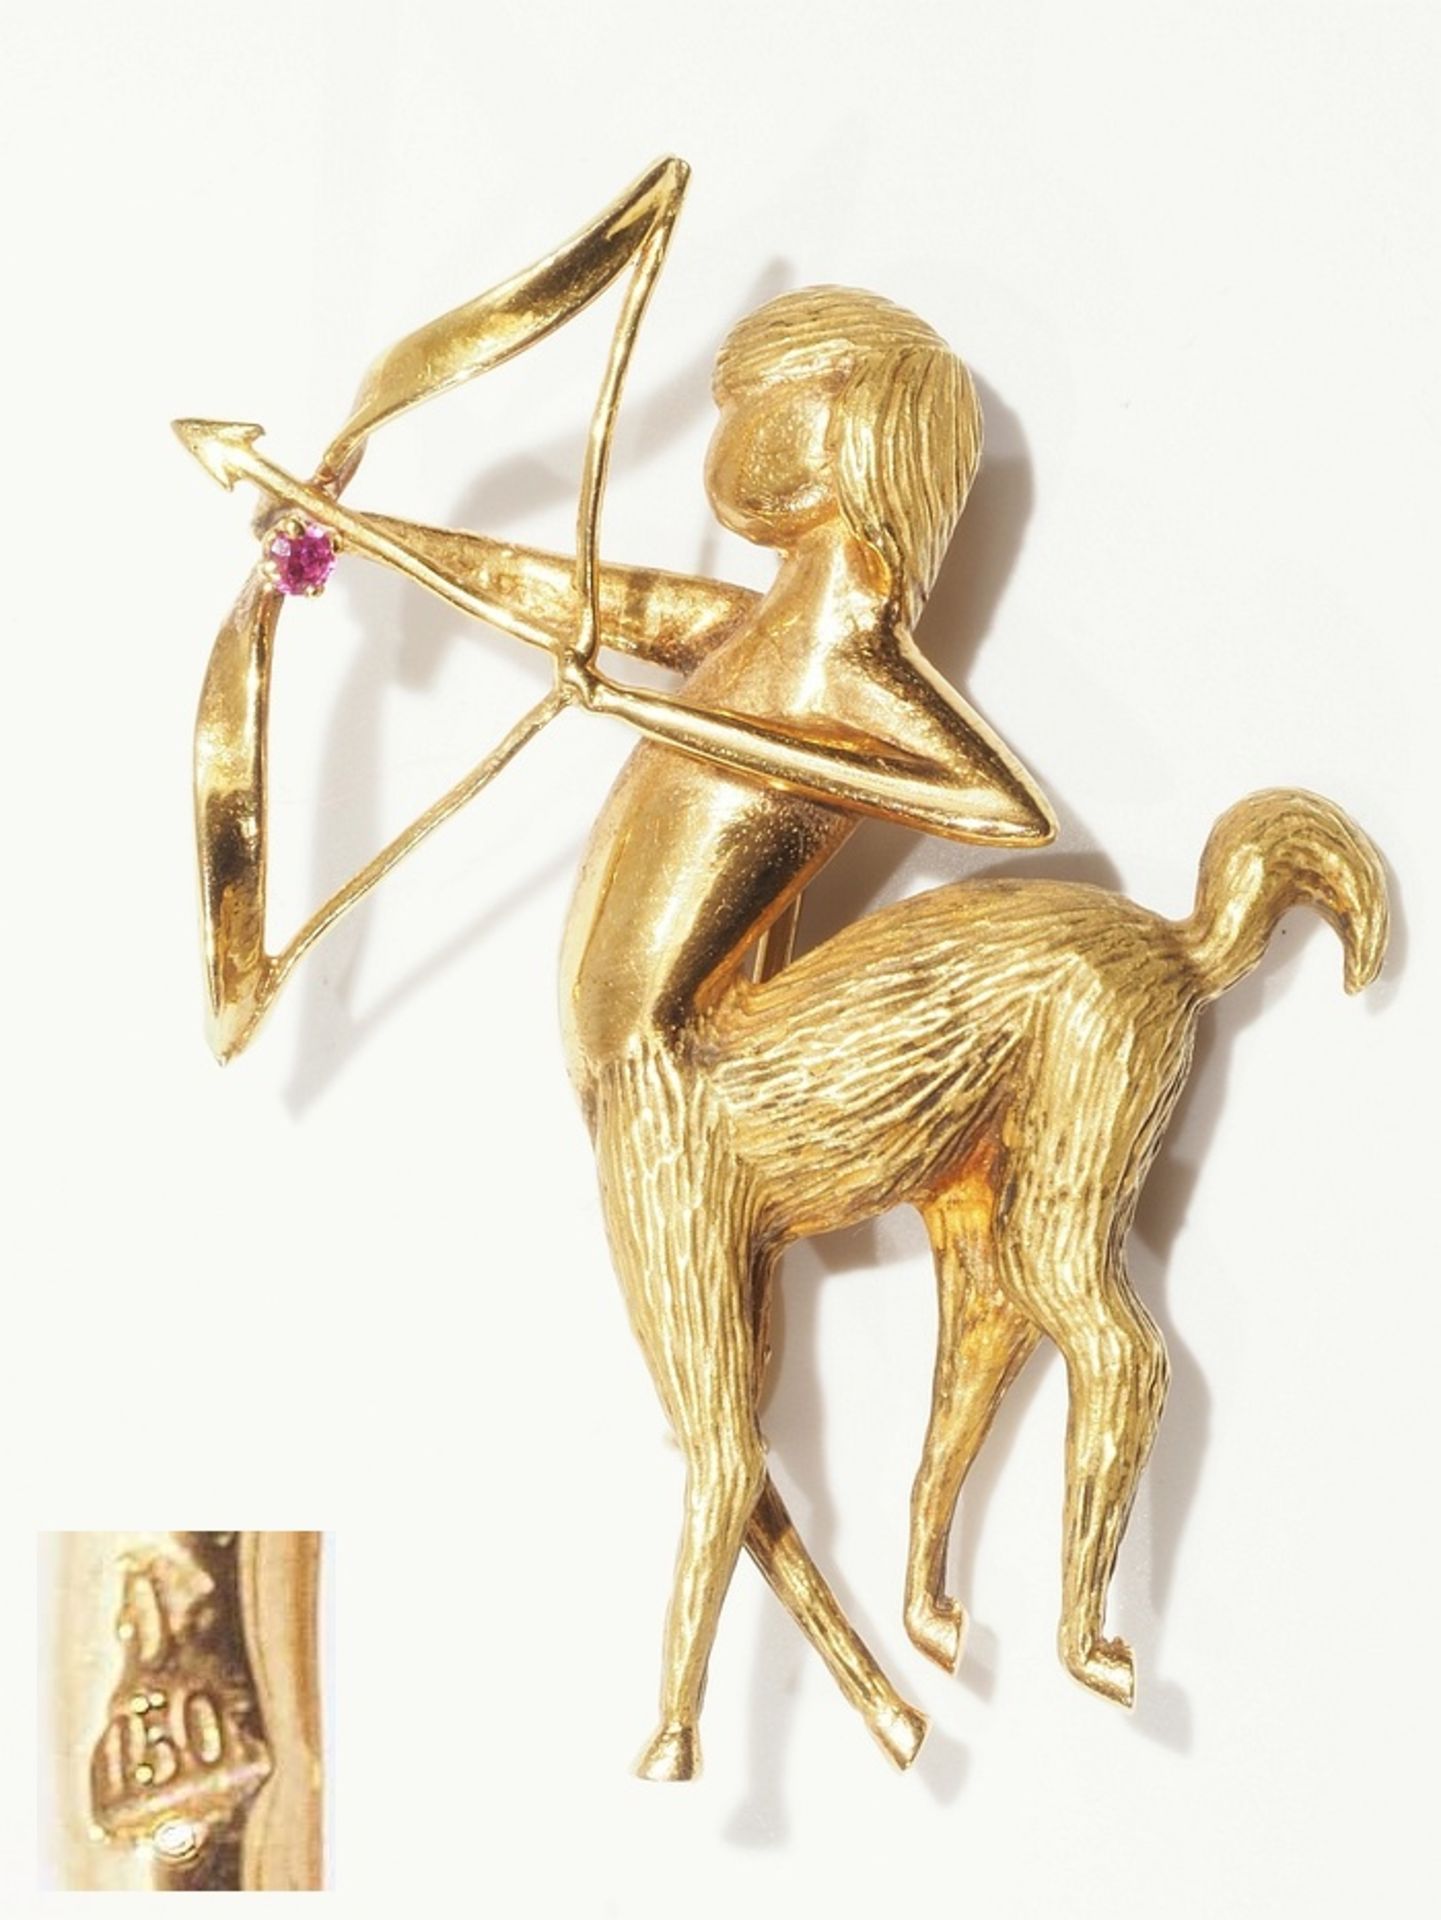 Sternzeichen-Brosche "Schütze", 750er Gelbgold. Weiblicher Schütze, plastisch dargestellt mit